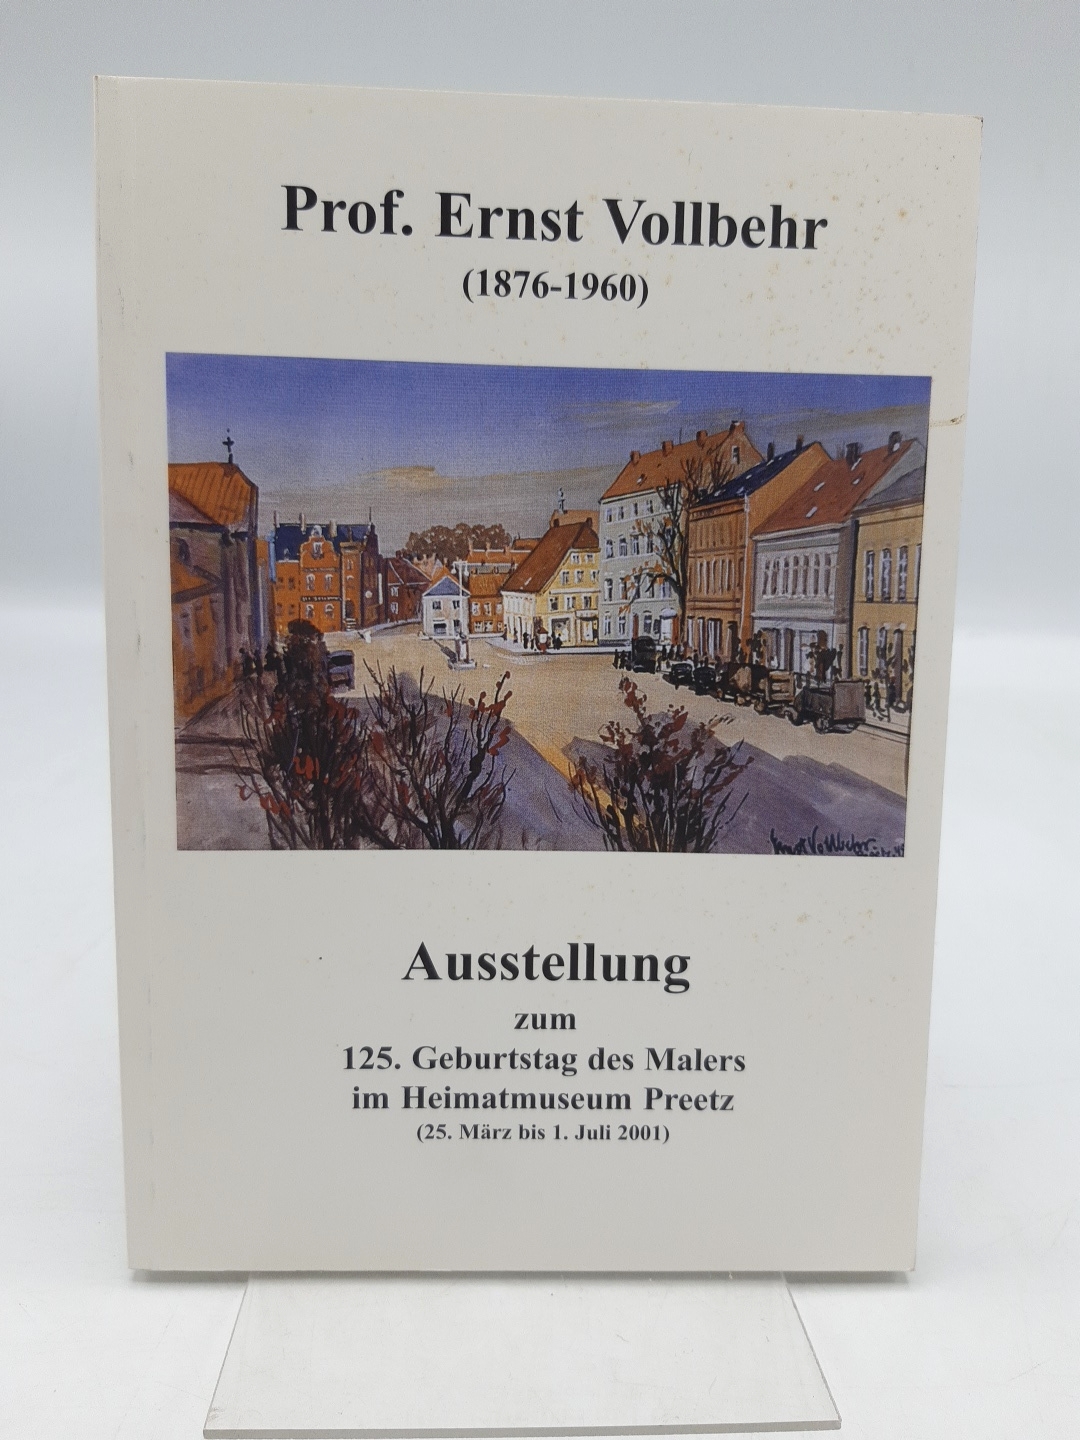 Prof. Ernst Vollbehr (1876-1960) Ausstellung im Heimatmuseum Preetz vom 25. März bis 1. Juli 2001 - Detlef Hoffmann